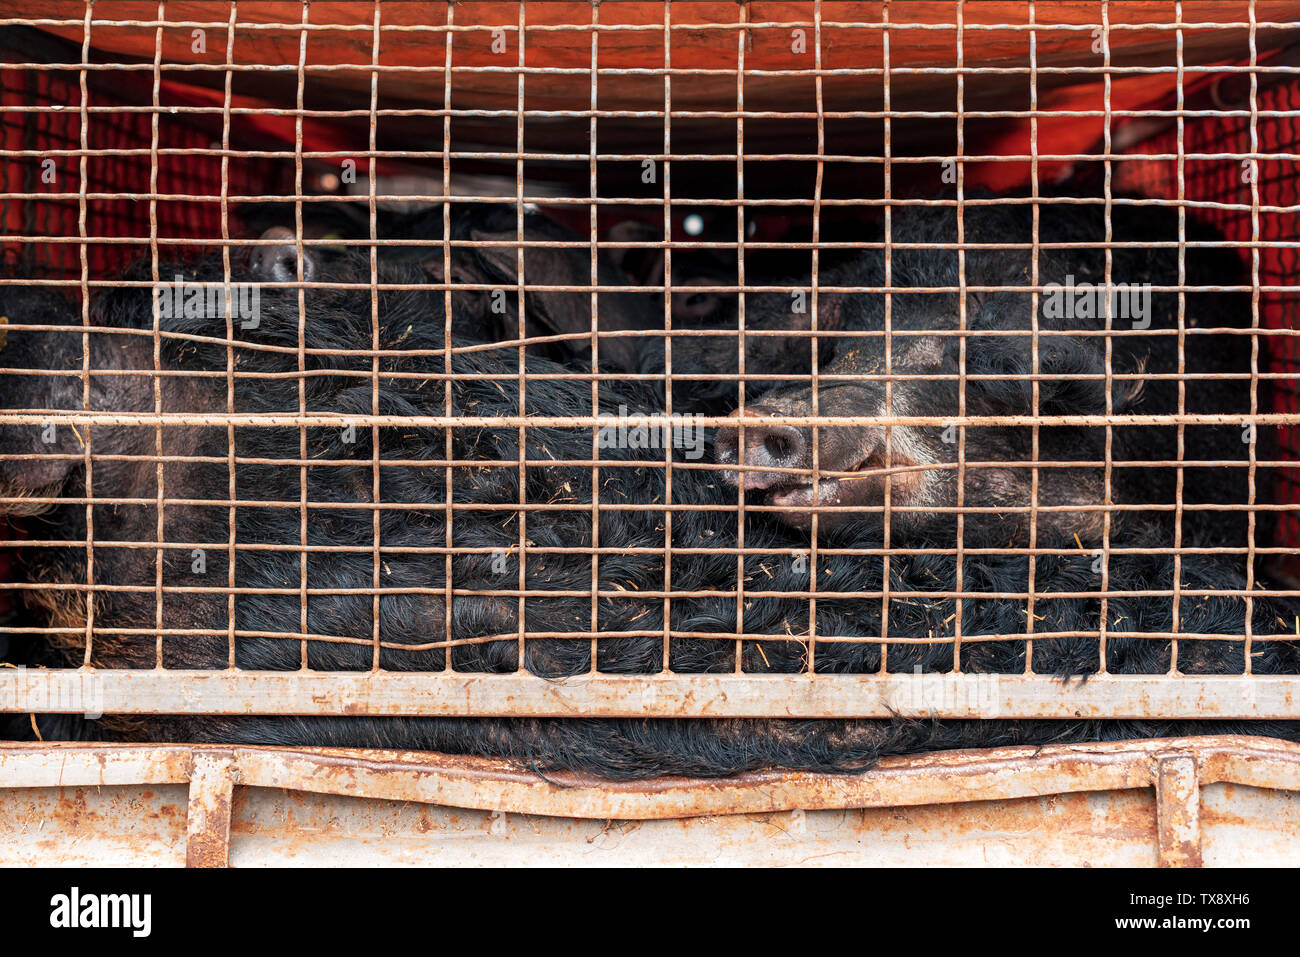 Mangalitsa Schweine im Fahrzeug Anhänger transportiert. Diese Rasse wächst wolliges Fell ähnlich wie Schafe. Stockfoto